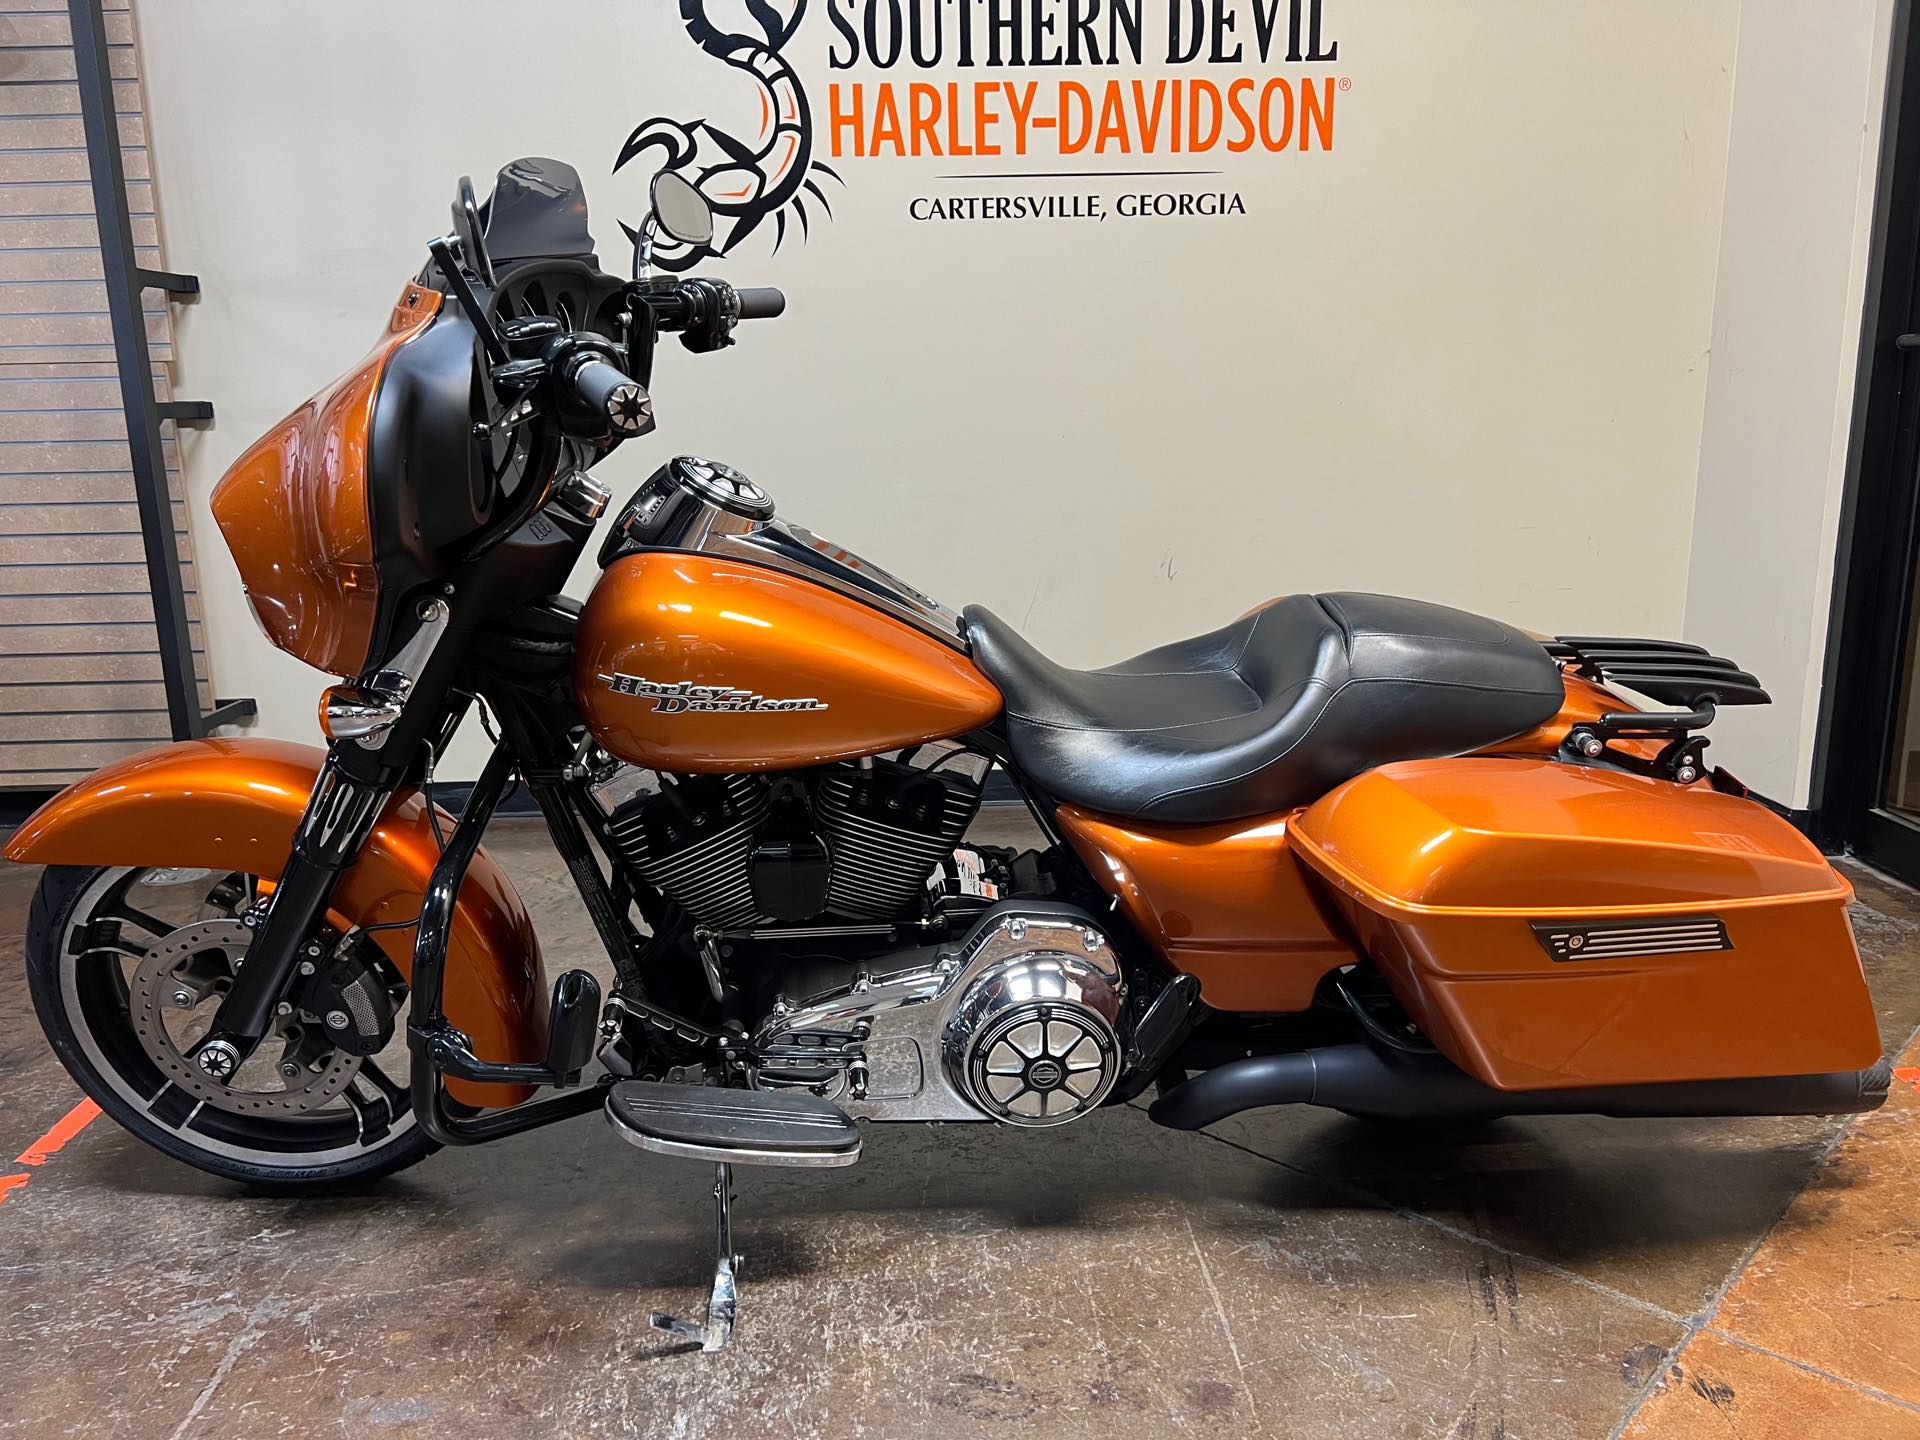 2014 Harley-Davidson Street Glide Base at Southern Devil Harley-Davidson